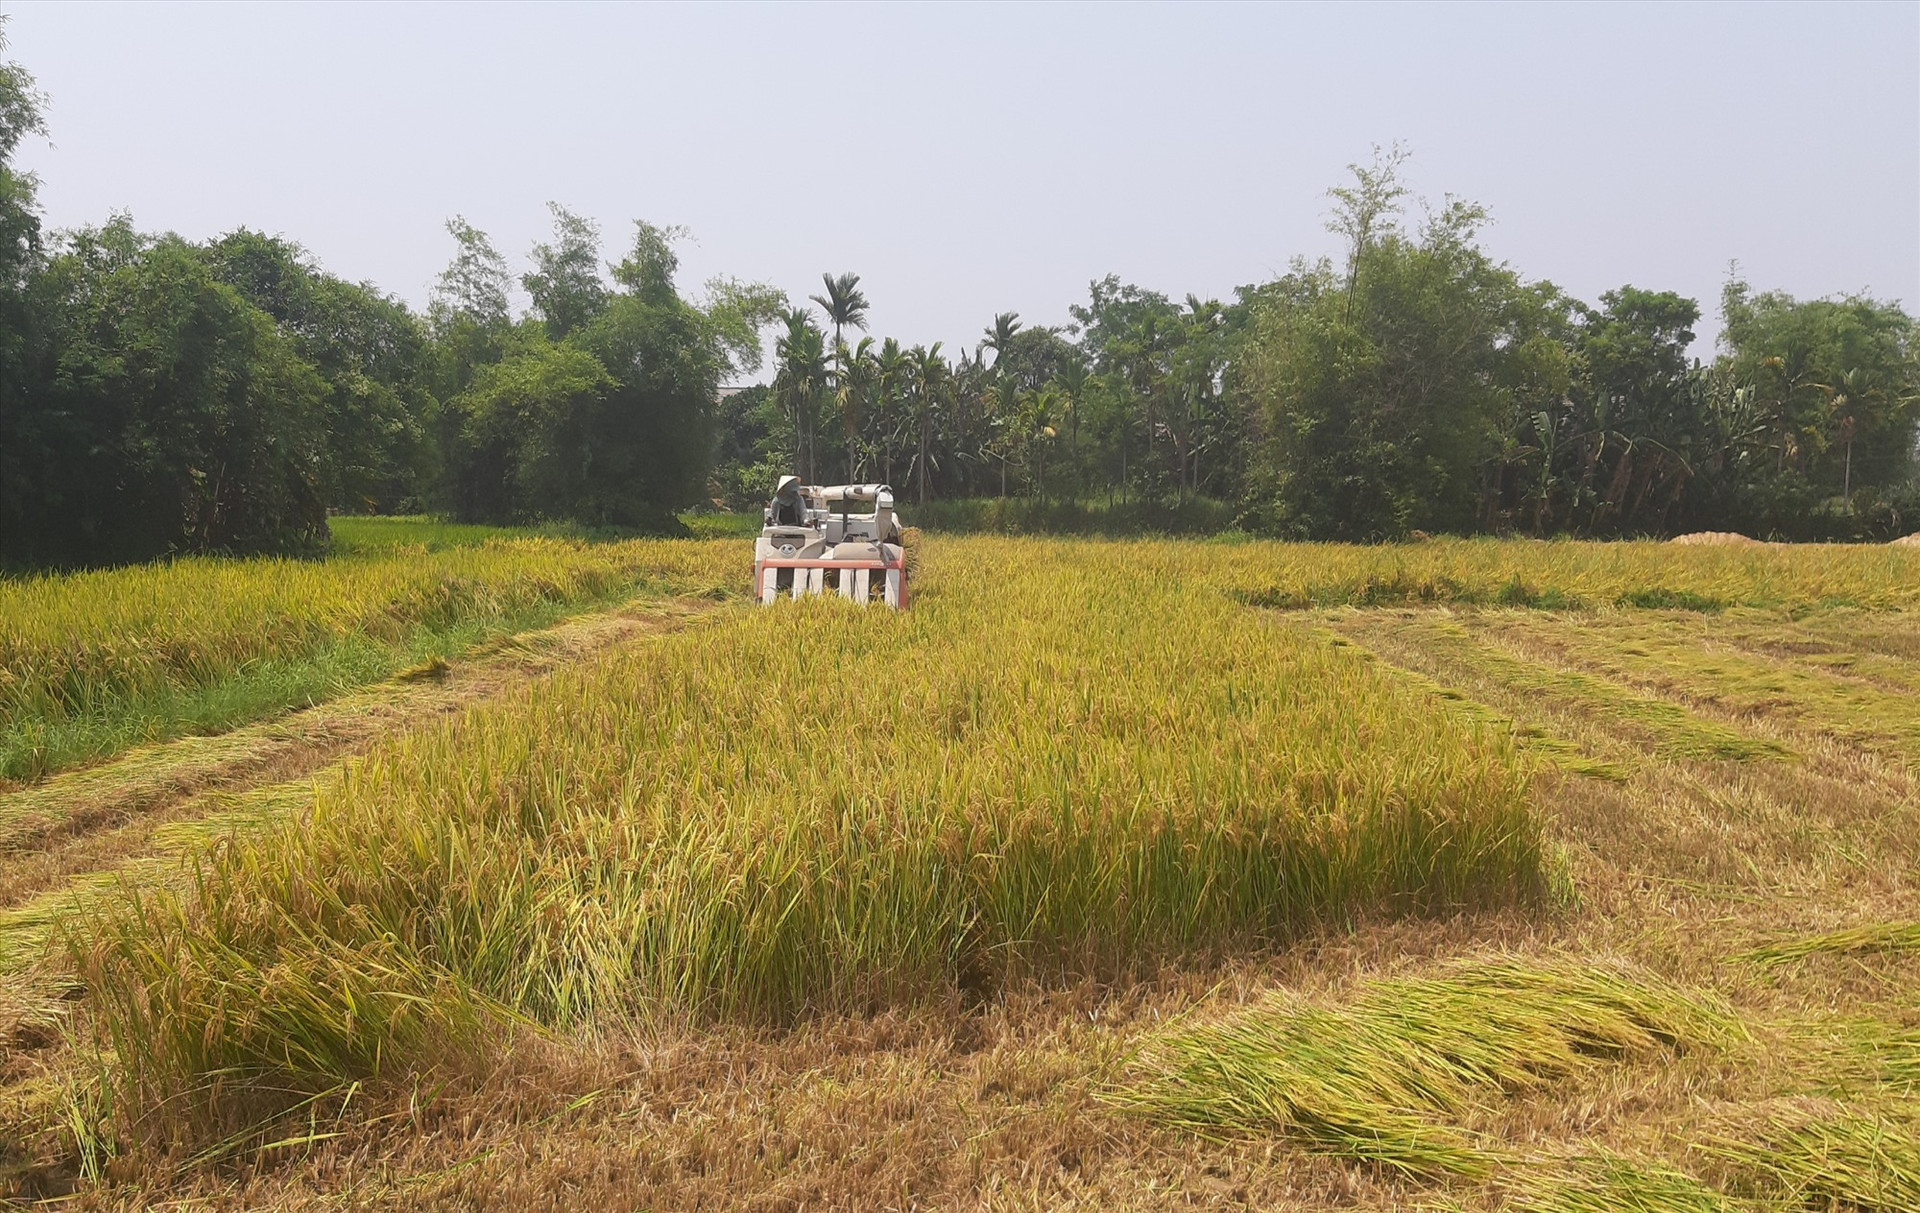 Nông dân các địa phương thuộc khu vực đồng bằng khẩn trương thu hoạch những ruộng lúa đã chín ở vùng trũng thấp nhằm hạn chế thiệt hại do mưa bão gây ra.  Ảnh: T.S